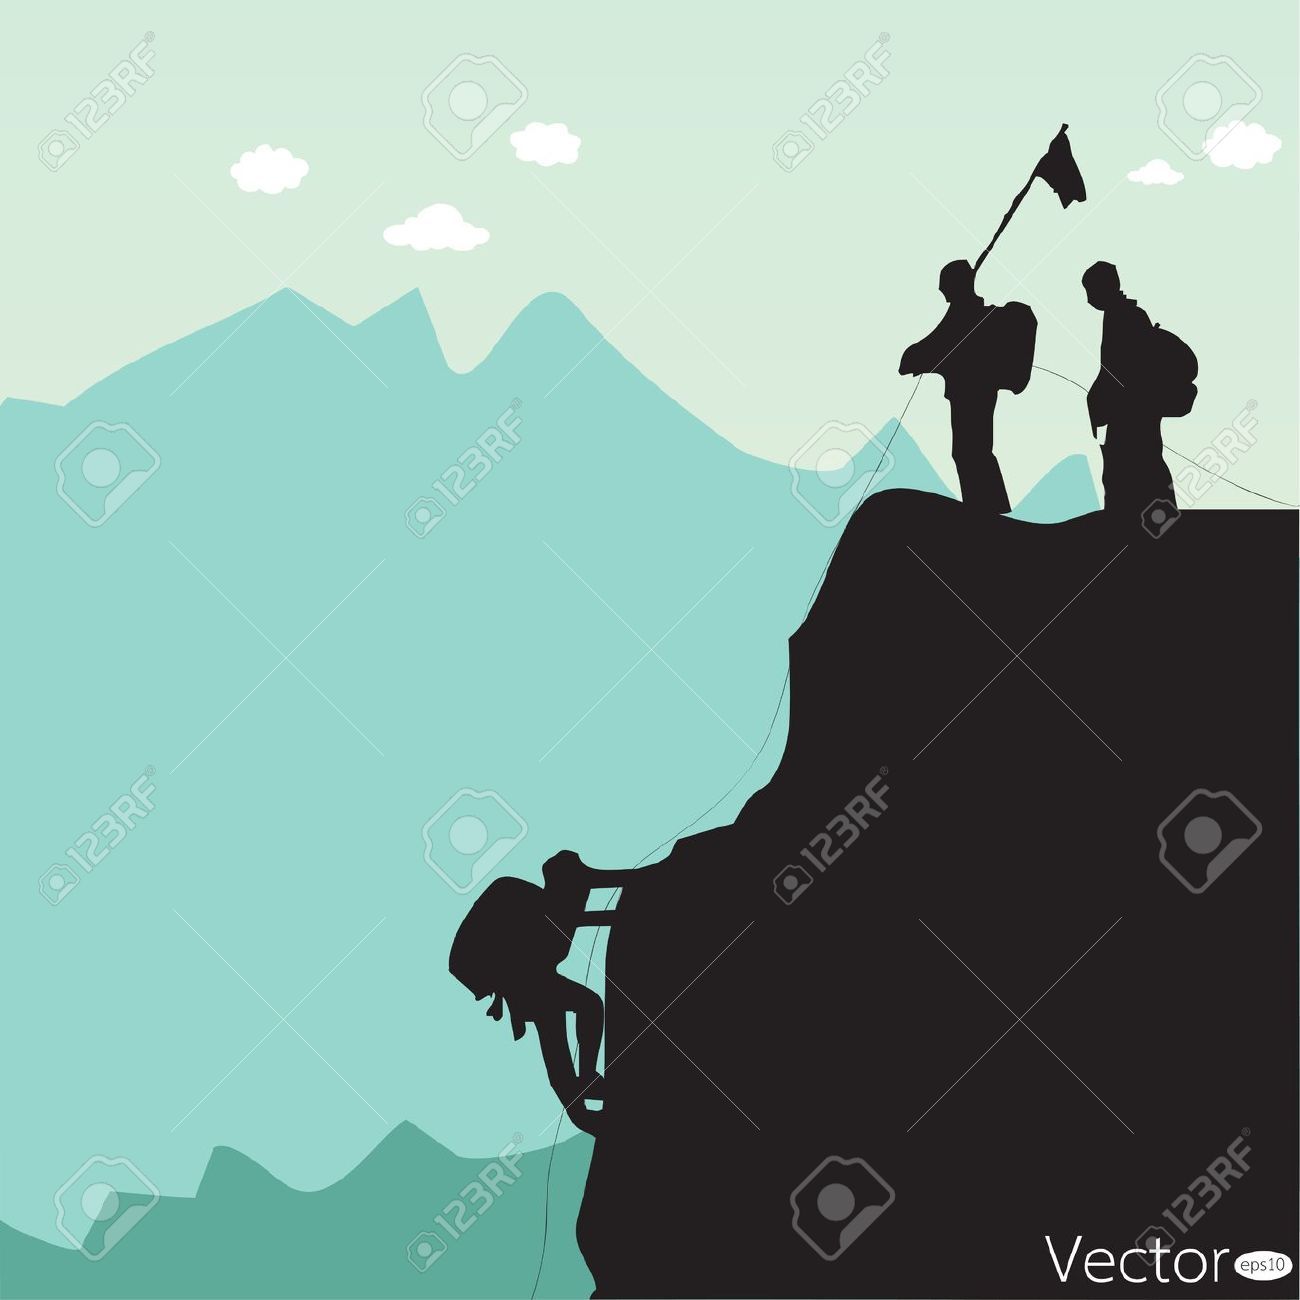 hills clipart rock climbing